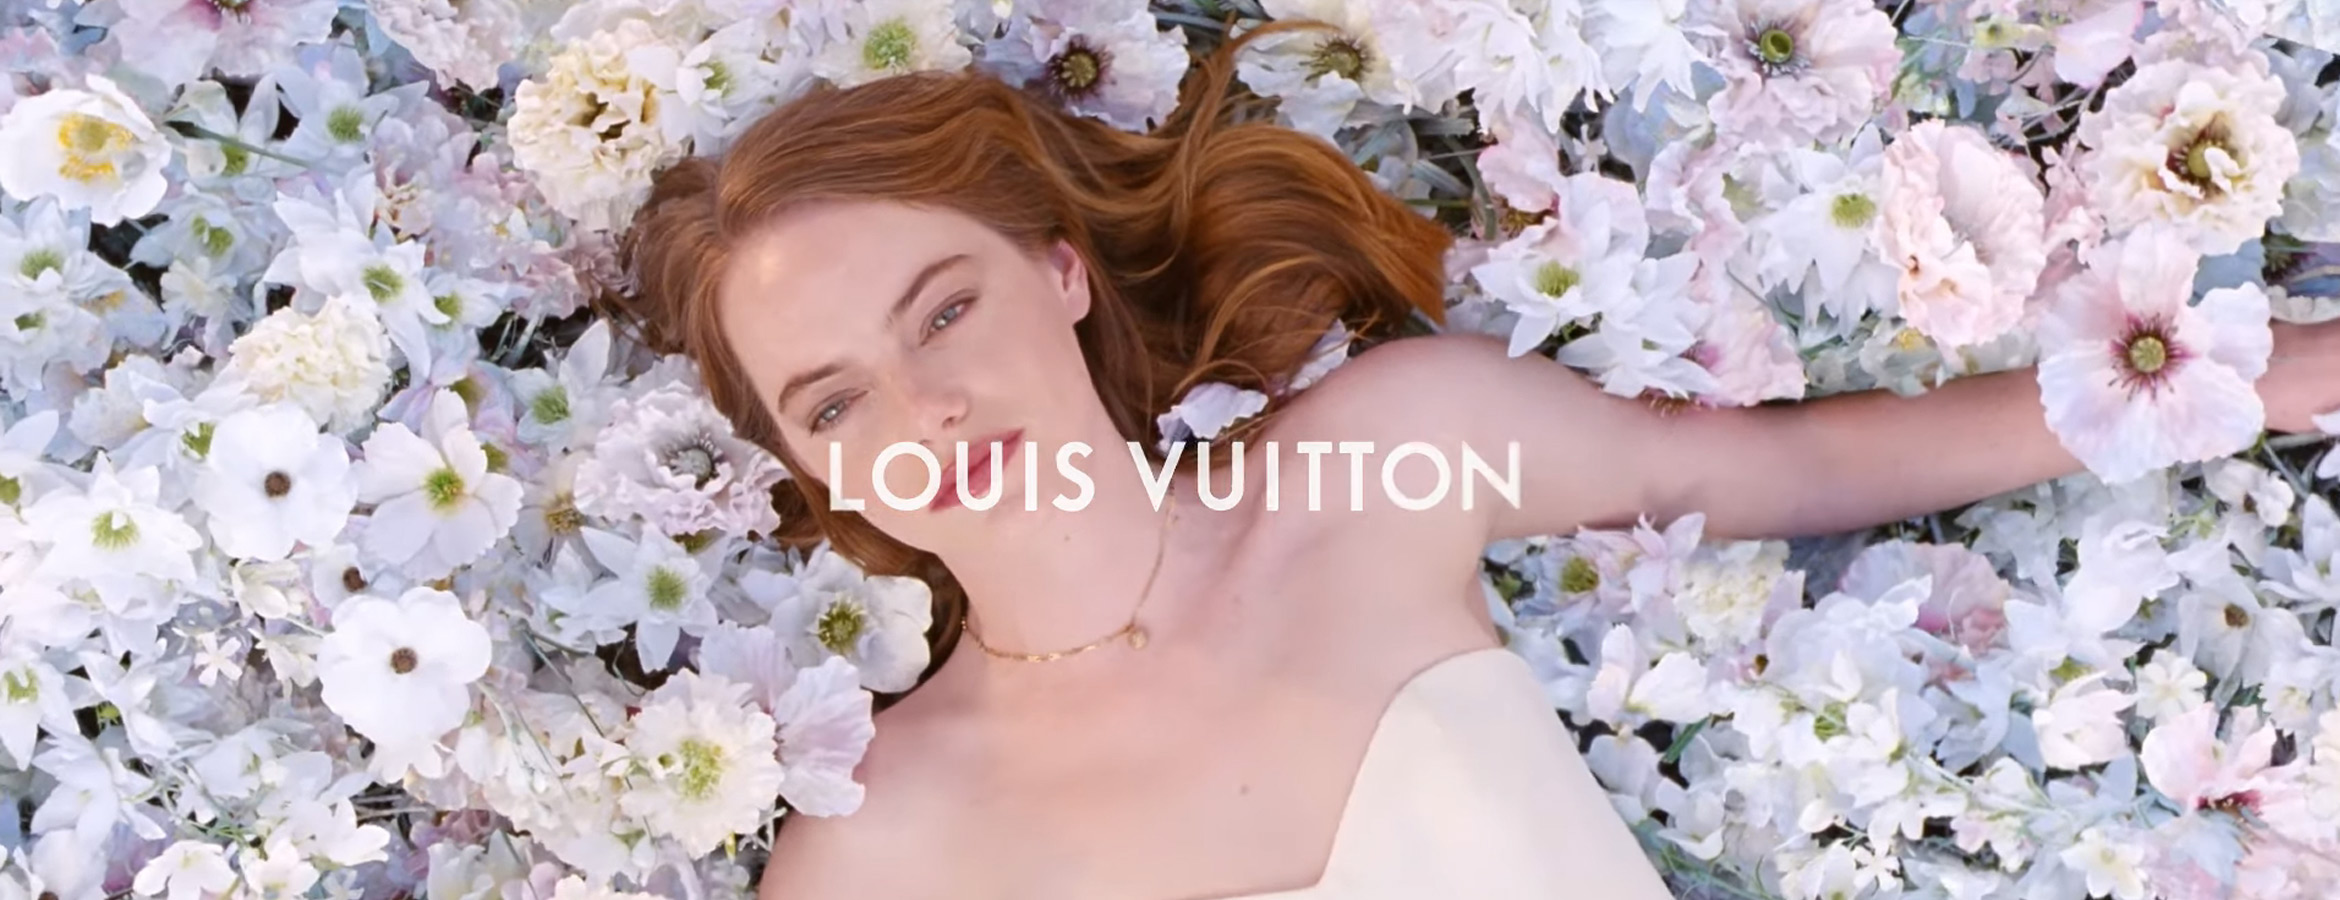 Coeur Battant Louis Vuitton Actrice